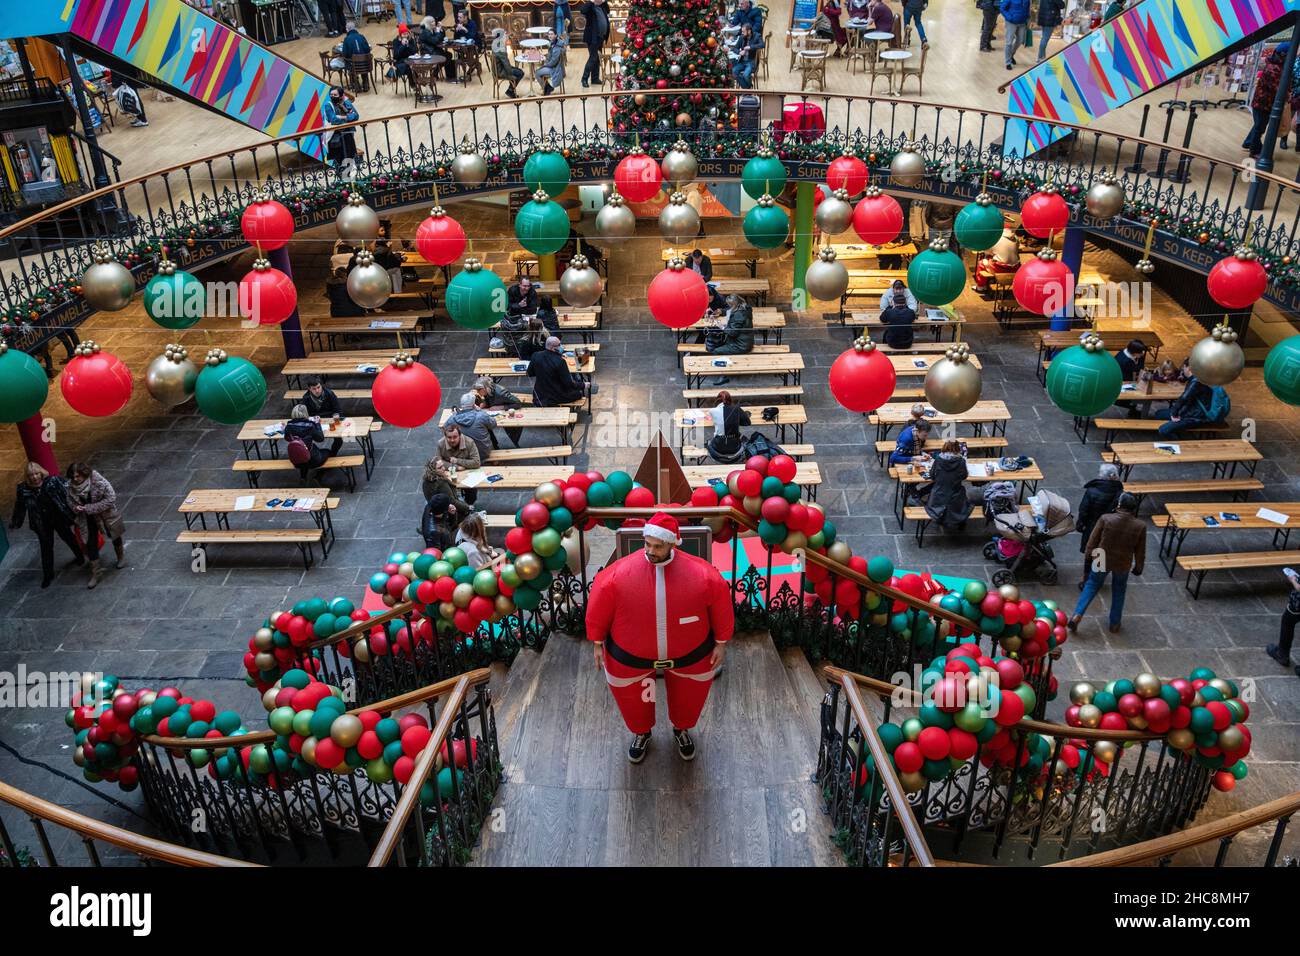 El centro de la ciudad de Leeds en el último día de semana antes de Navidad durante la covid pandemia 2021 de diciembre. La Bolsa de Maíz de Leeds. Foto de stock